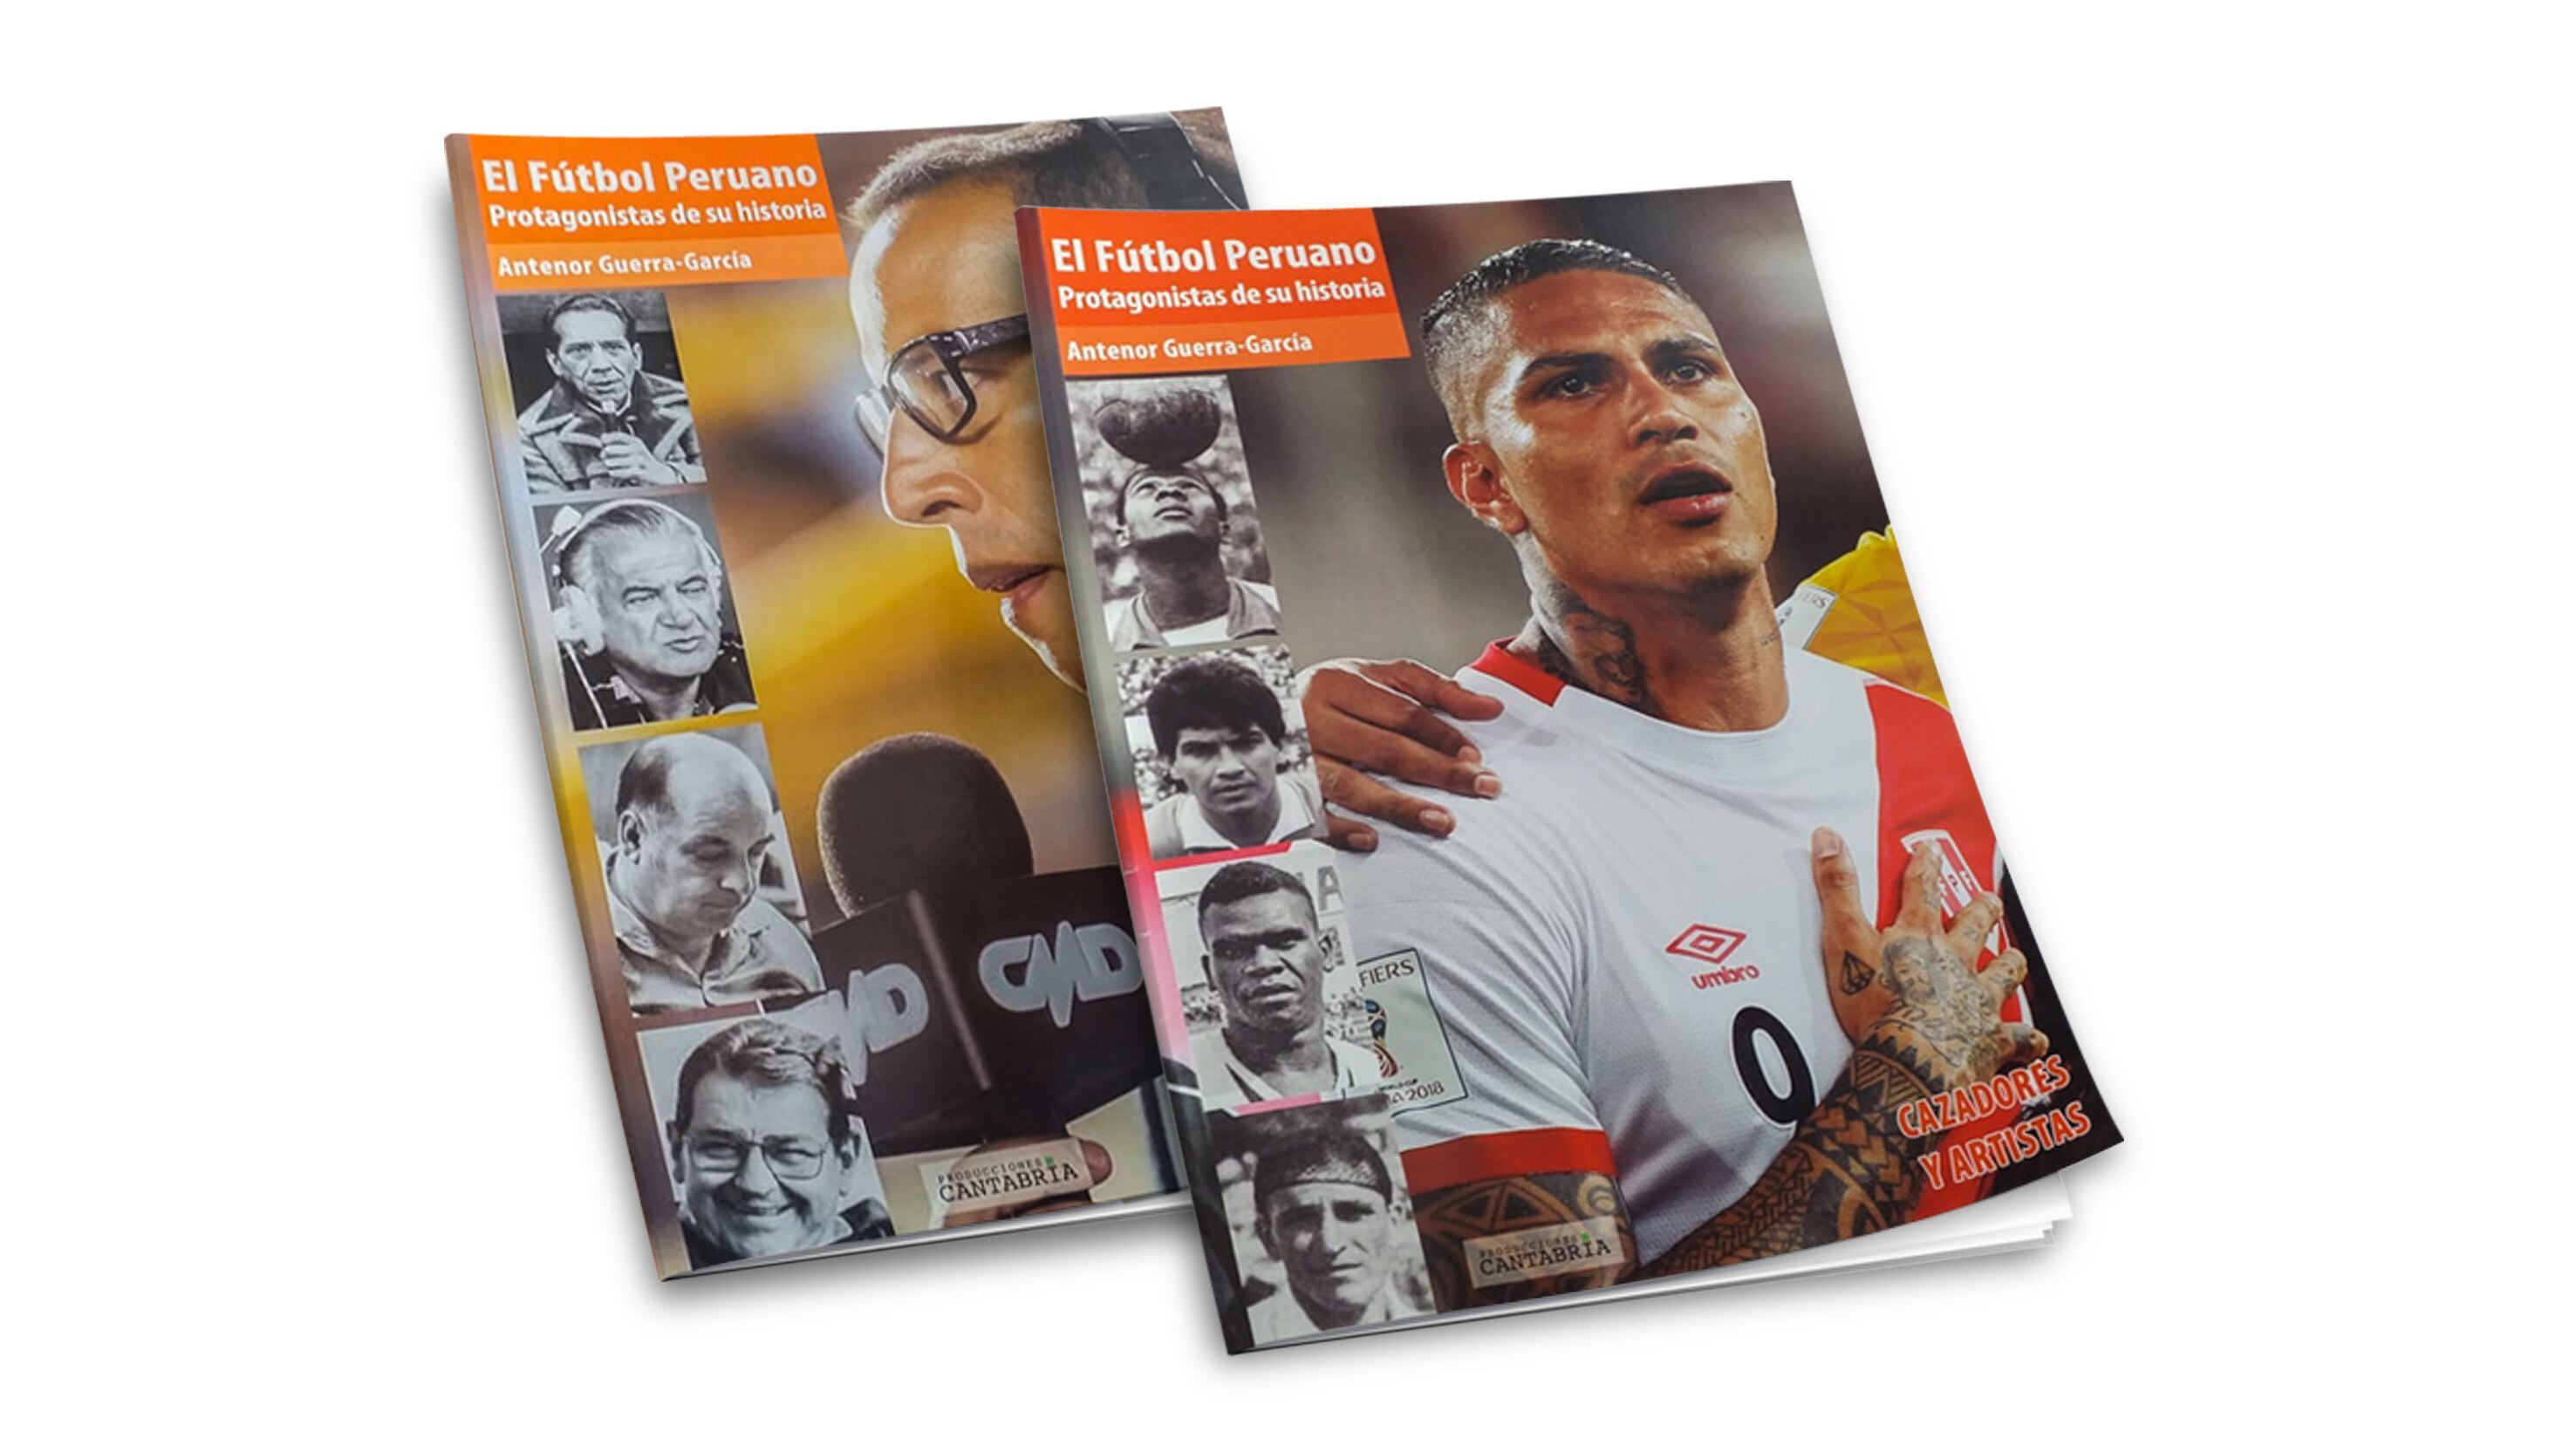 Son 7 entregas que no deben faltar en tu biblioteca y puedas compartir con tus seres queridos la historia del fútbol peruano.